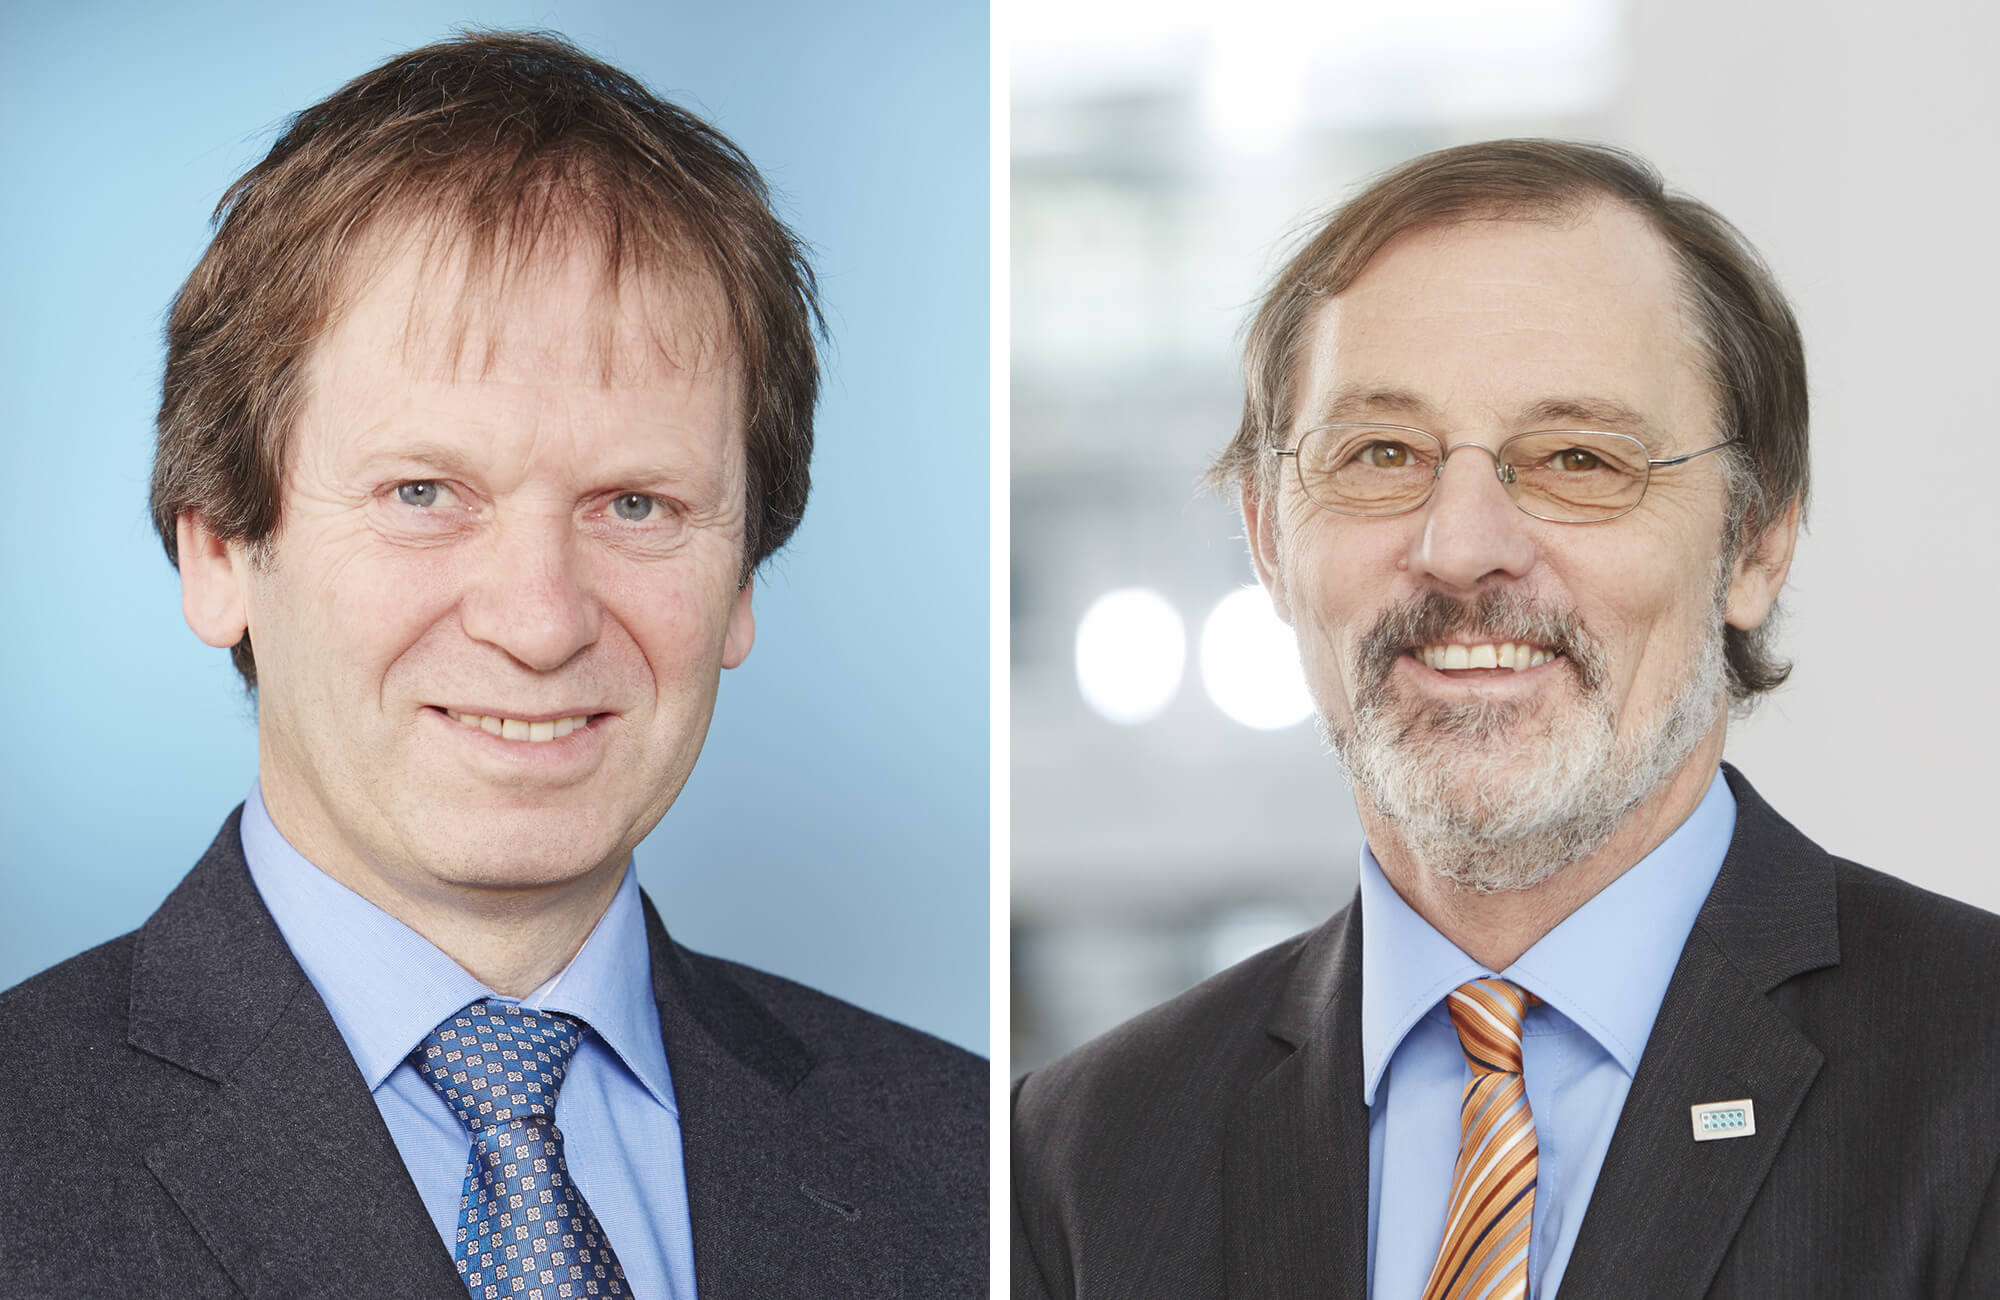 Prof. Dr. Hans-Martin Henning and Dr. Andreas Bett